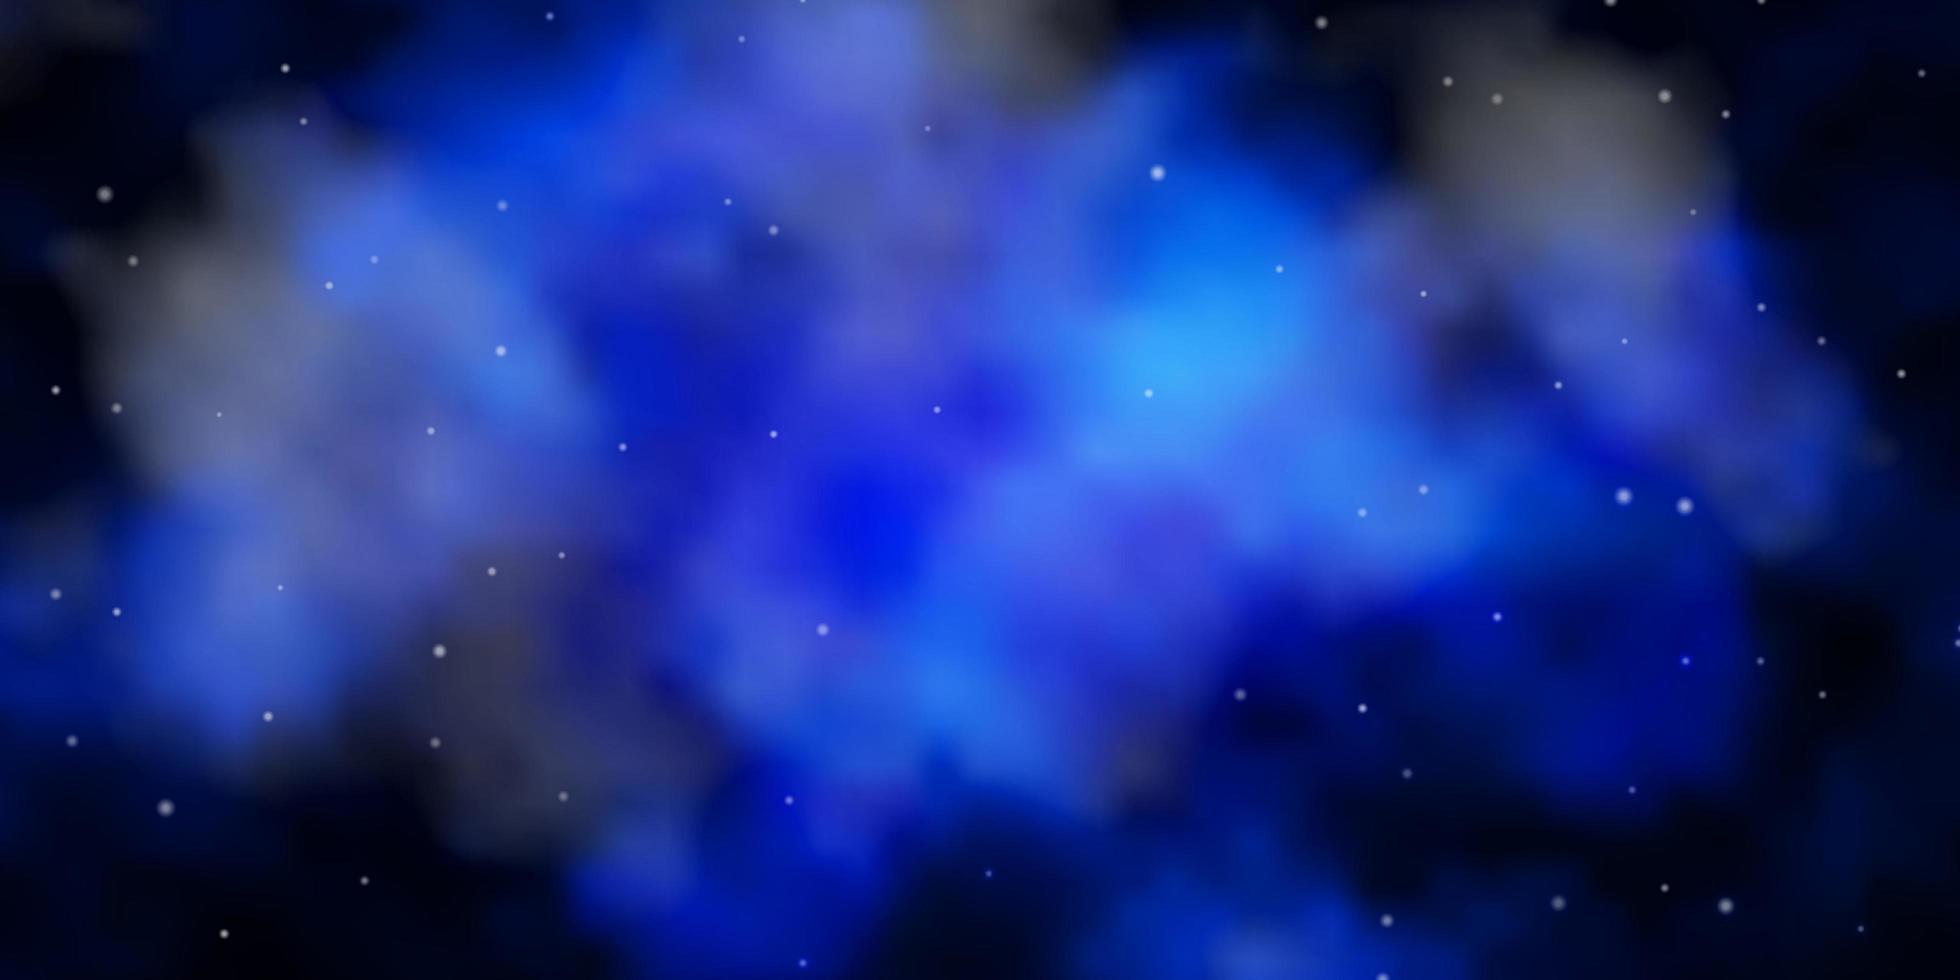 sfondo vettoriale blu scuro con stelle piccole e grandi. illustrazione astratta geometrica moderna con le stelle. modello per siti Web, pagine di destinazione.